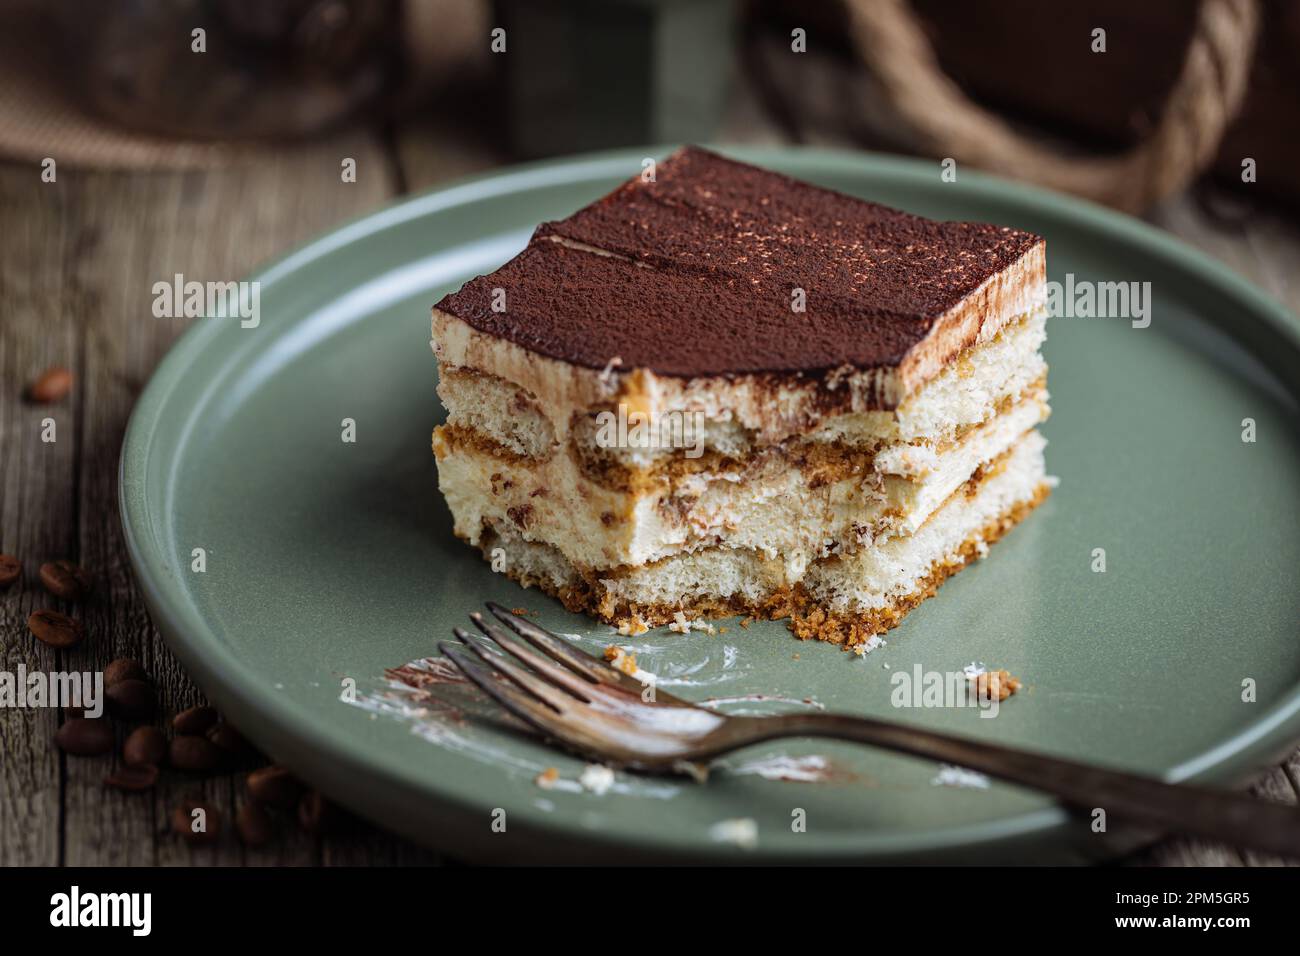 Un pezzo di torta tiramisù, dessert tradizionale italiano, servito in una scena rustica e piena di moody. Fondo in legno e piatto verde. Foto Stock